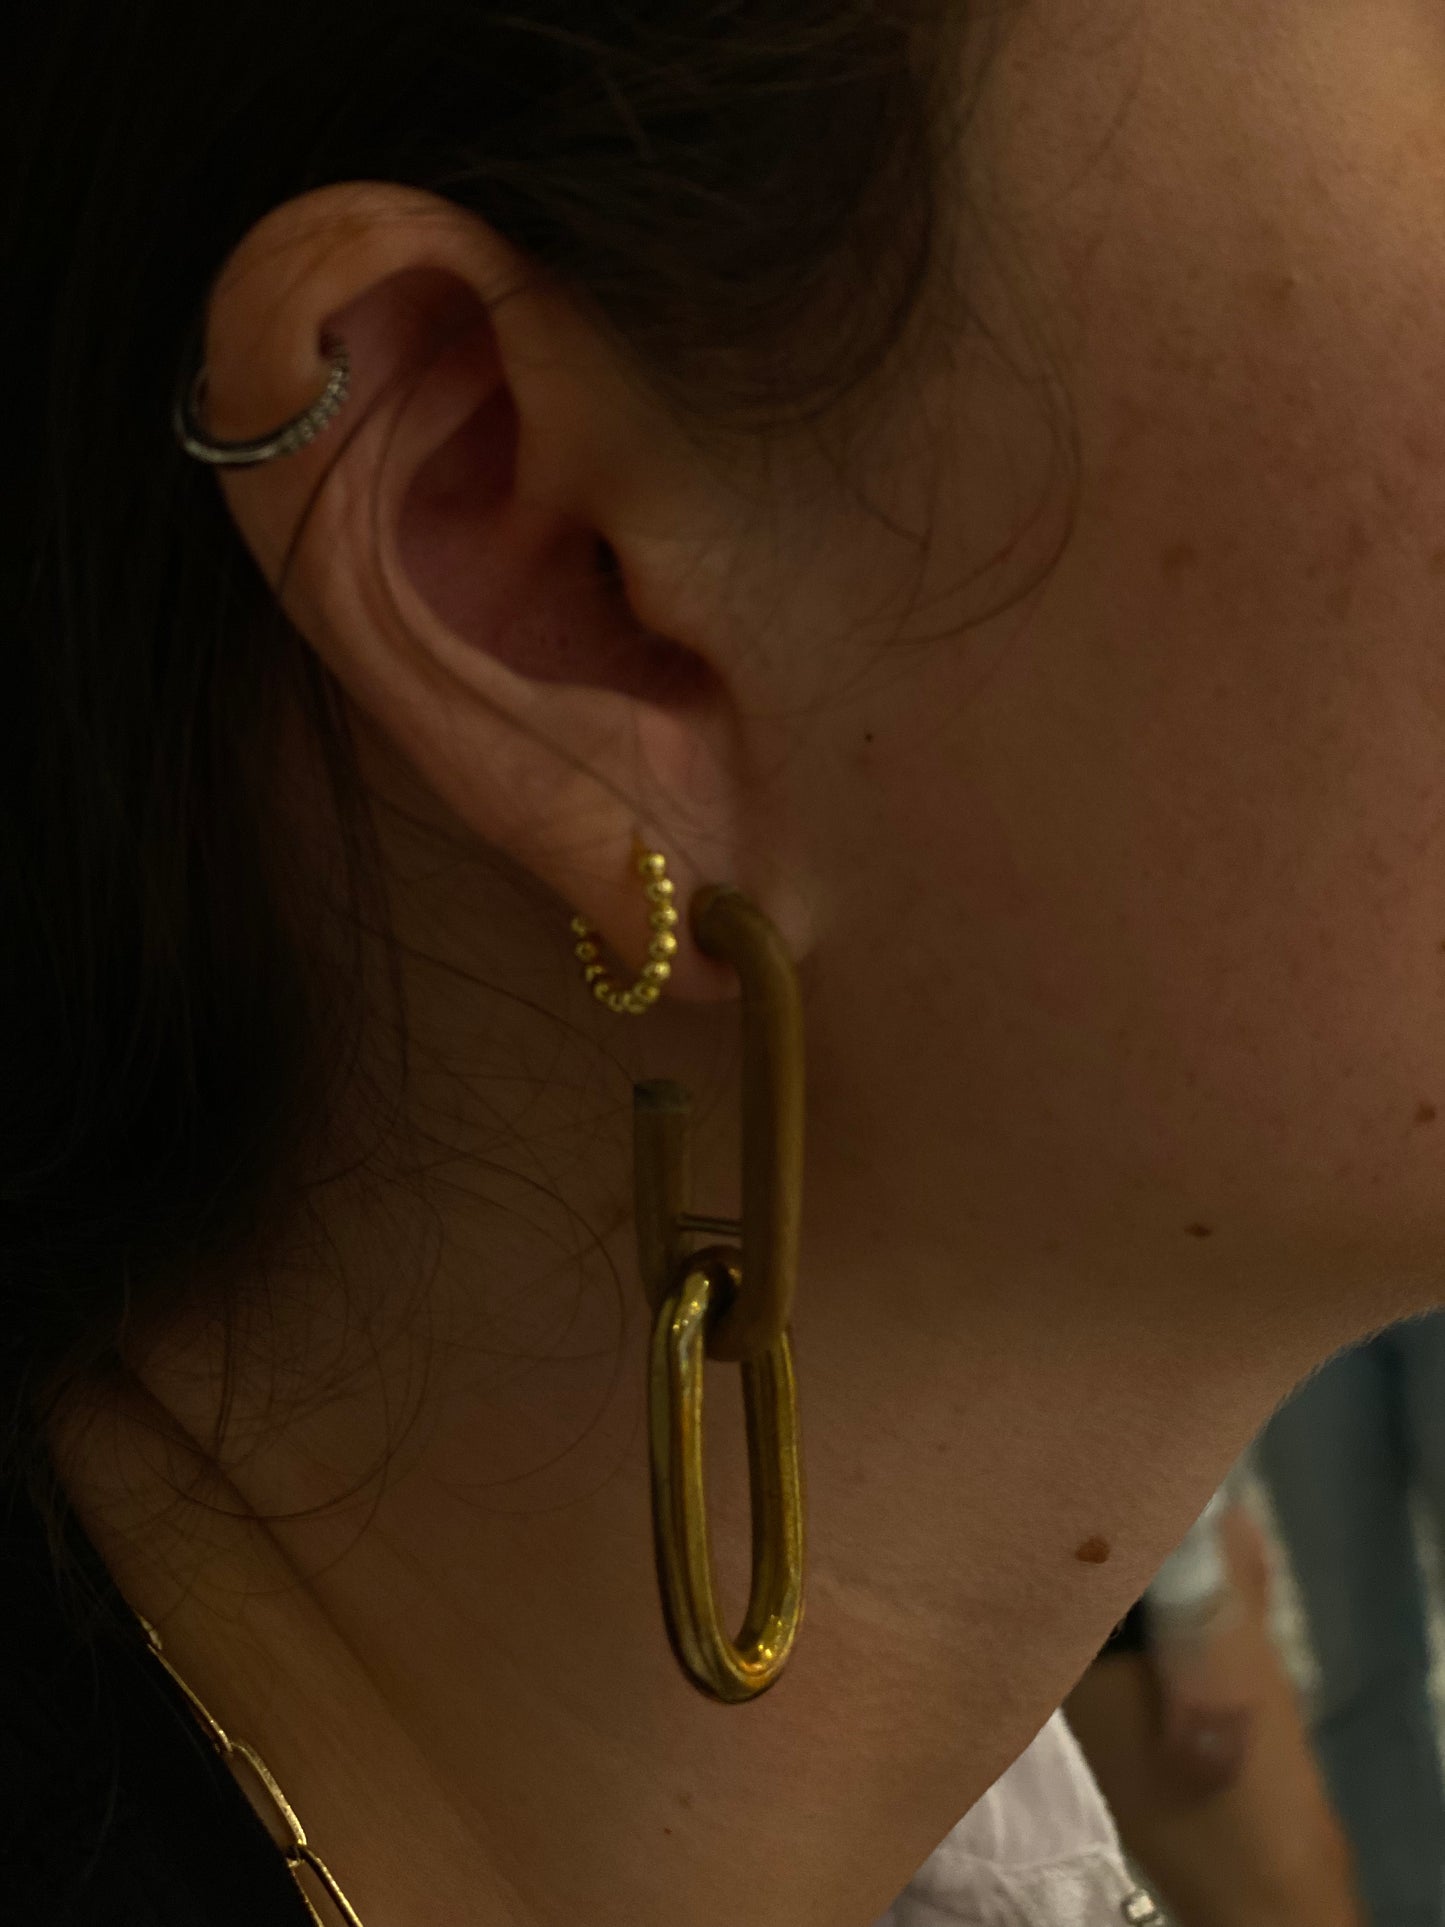 Soko Wooden/Gold Earrings